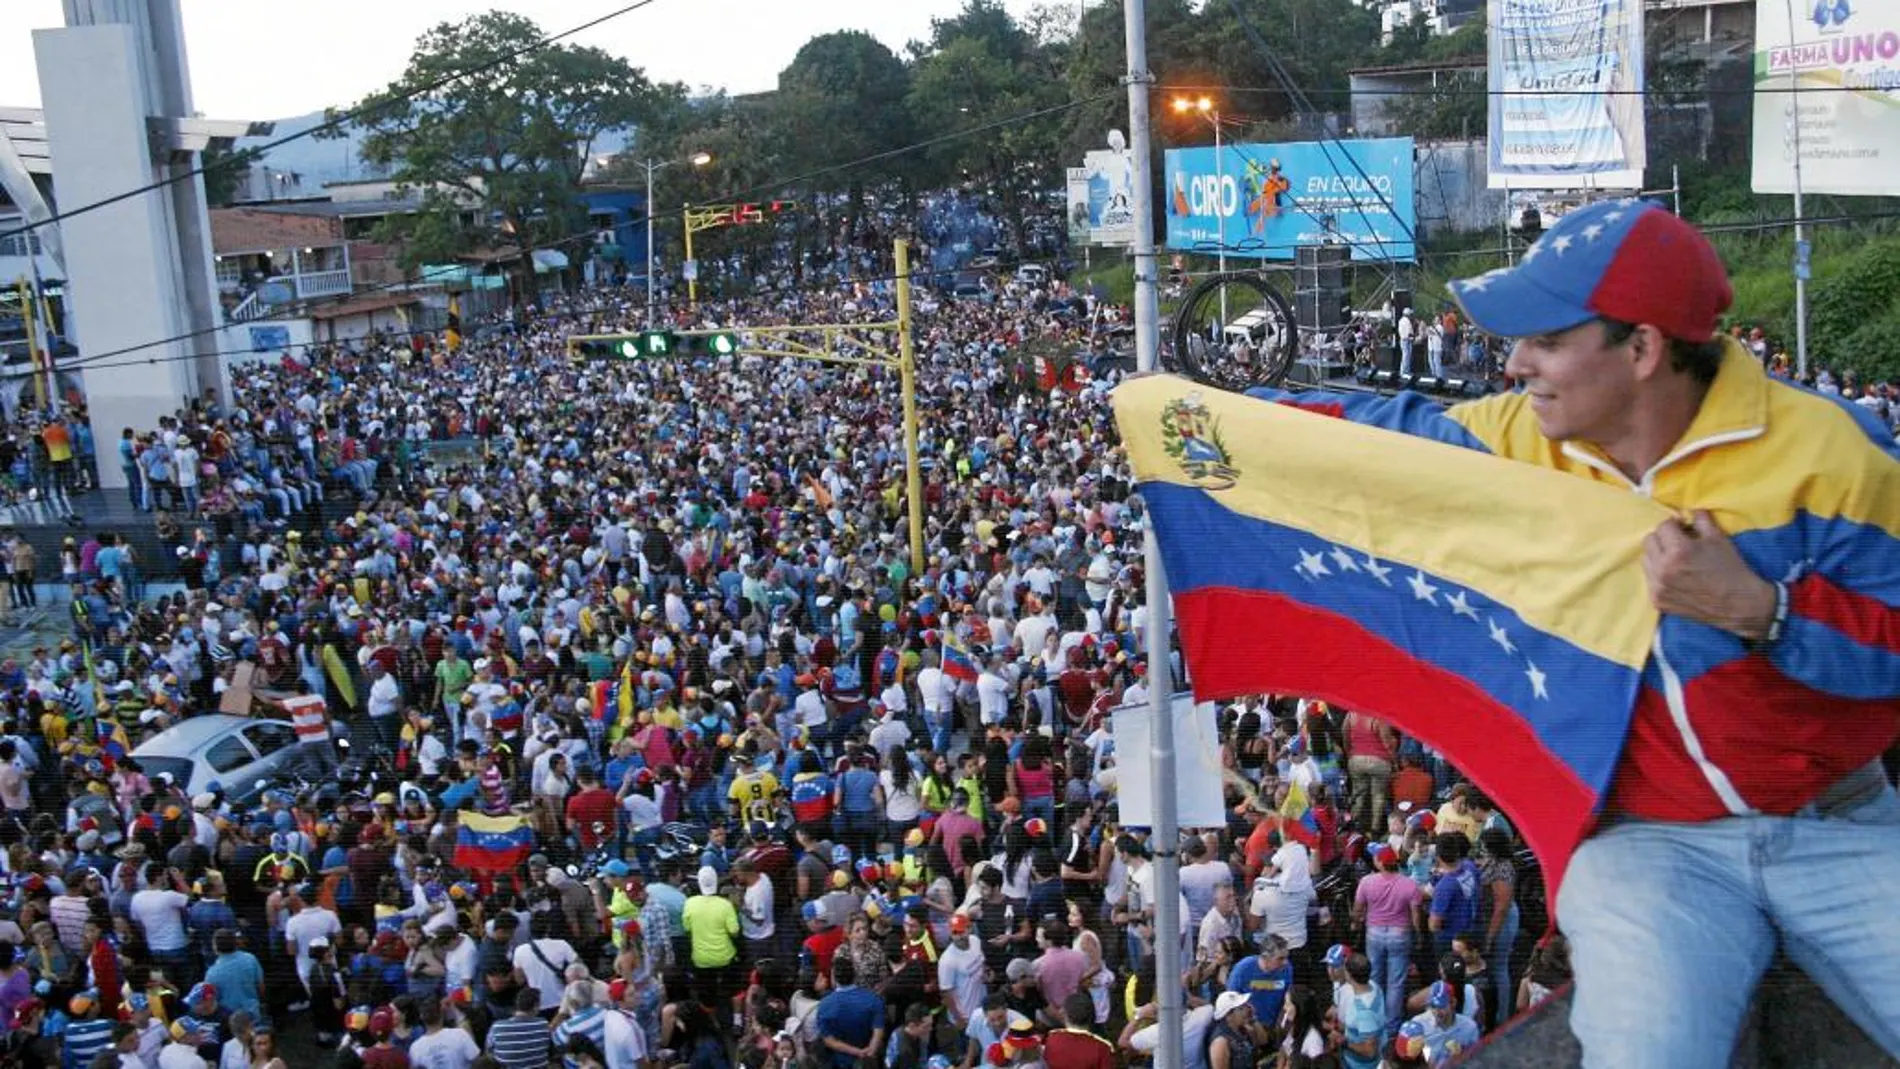 El lugar donde empezó todo. Un venezolano despliega una bandera nacional en San Cristóbal, en el estado de Táchira, donde comenzaron las protestas contra Maduro en febrero de 2014